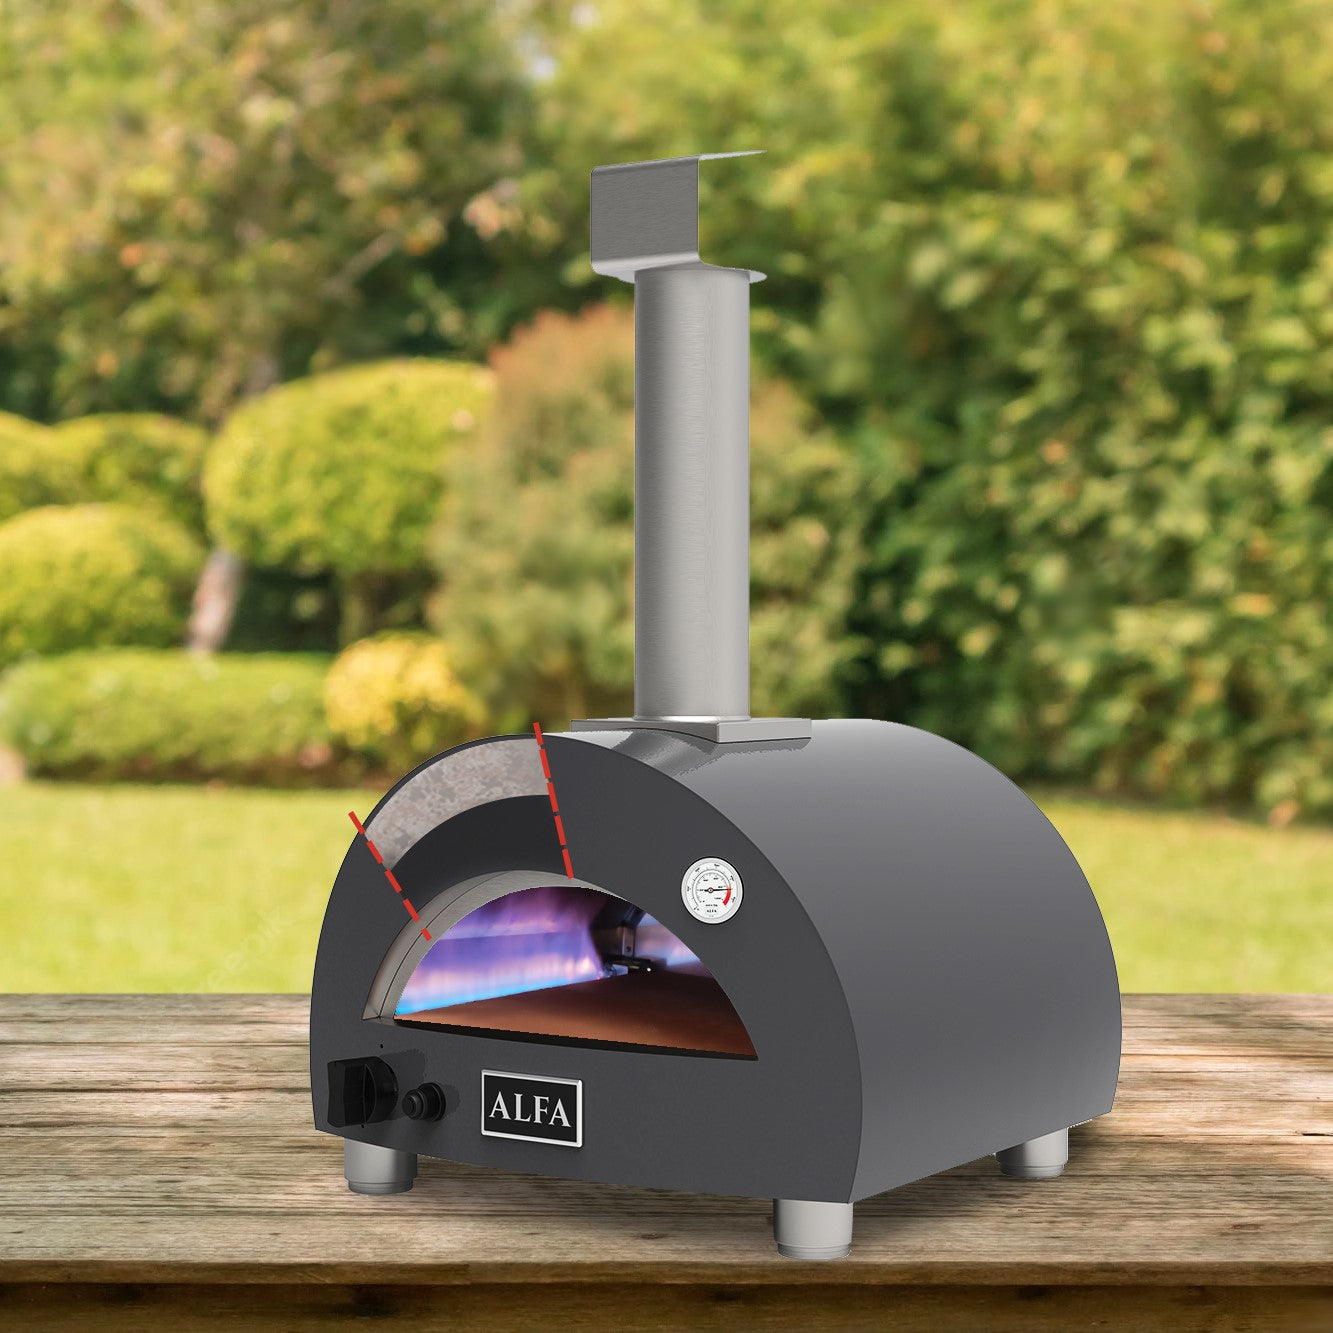 Alfa Forni Moderno Portable Gas Pizza Oven gas burner illustration